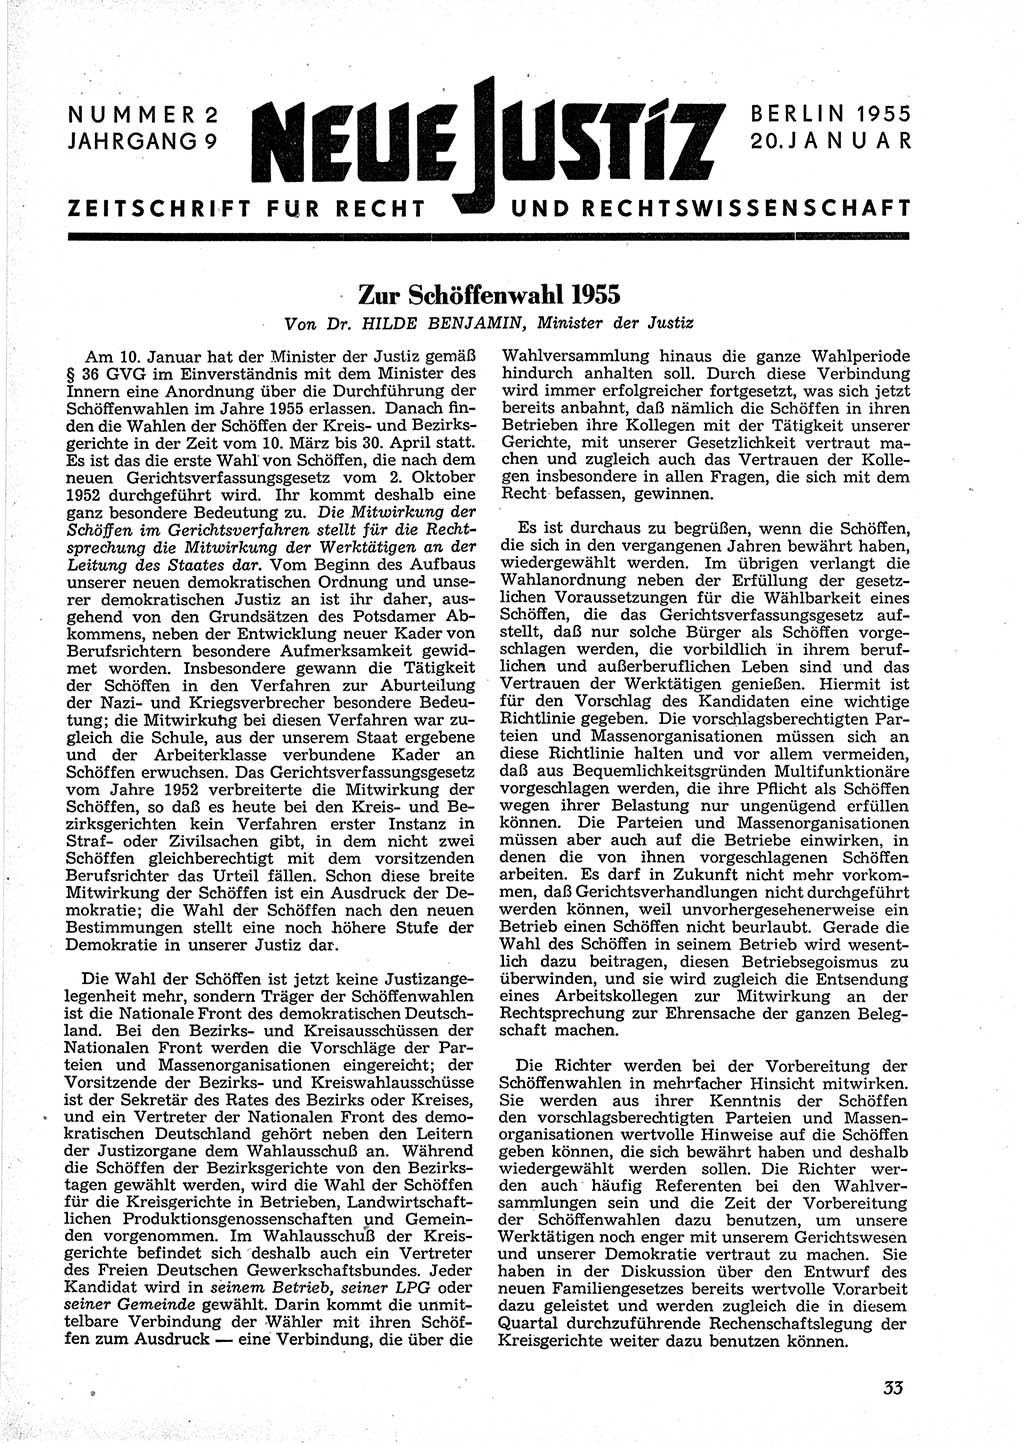 Neue Justiz (NJ), Zeitschrift für Recht und Rechtswissenschaft [Deutsche Demokratische Republik (DDR)], 9. Jahrgang 1955, Seite 33 (NJ DDR 1955, S. 33)